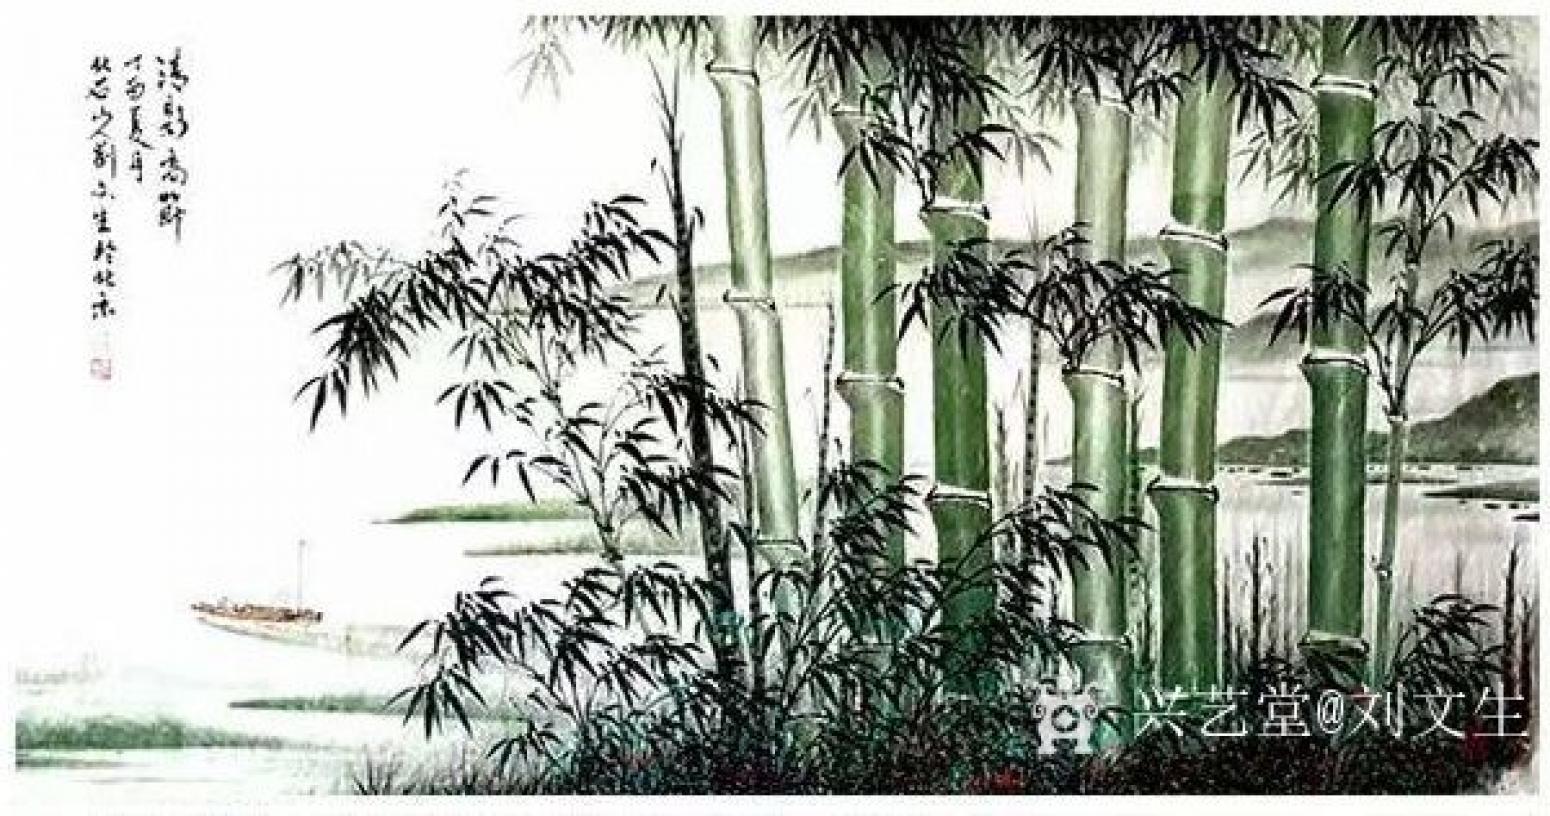 刘文生国画作品《竹-清影高节》